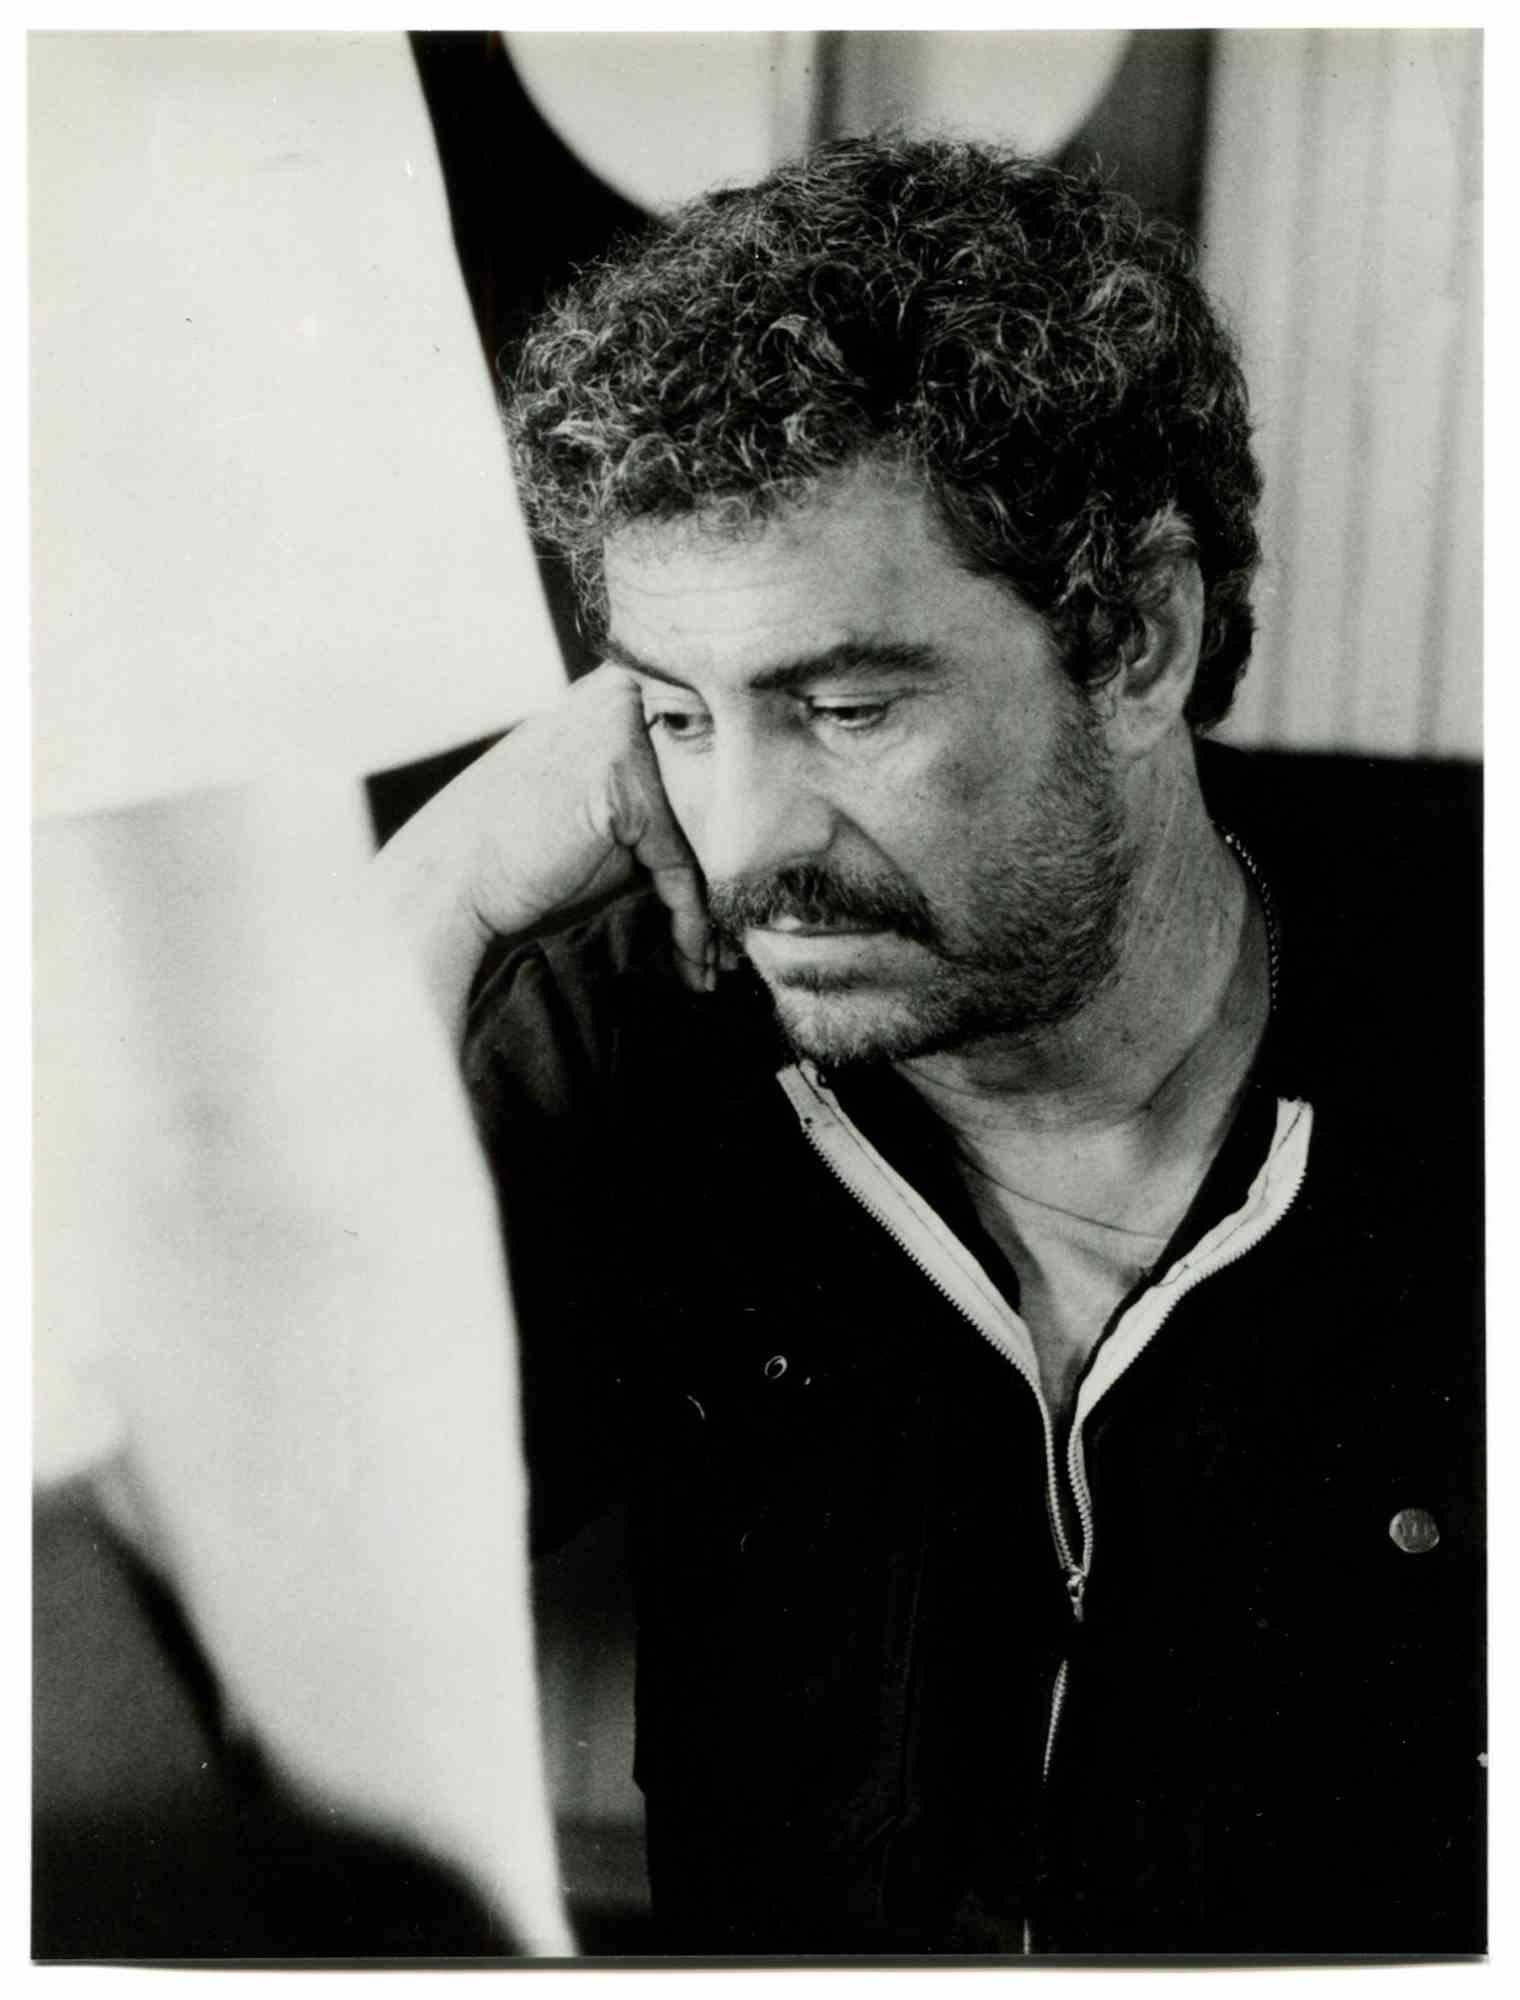 Nino Manfredi - Photo - 1980s